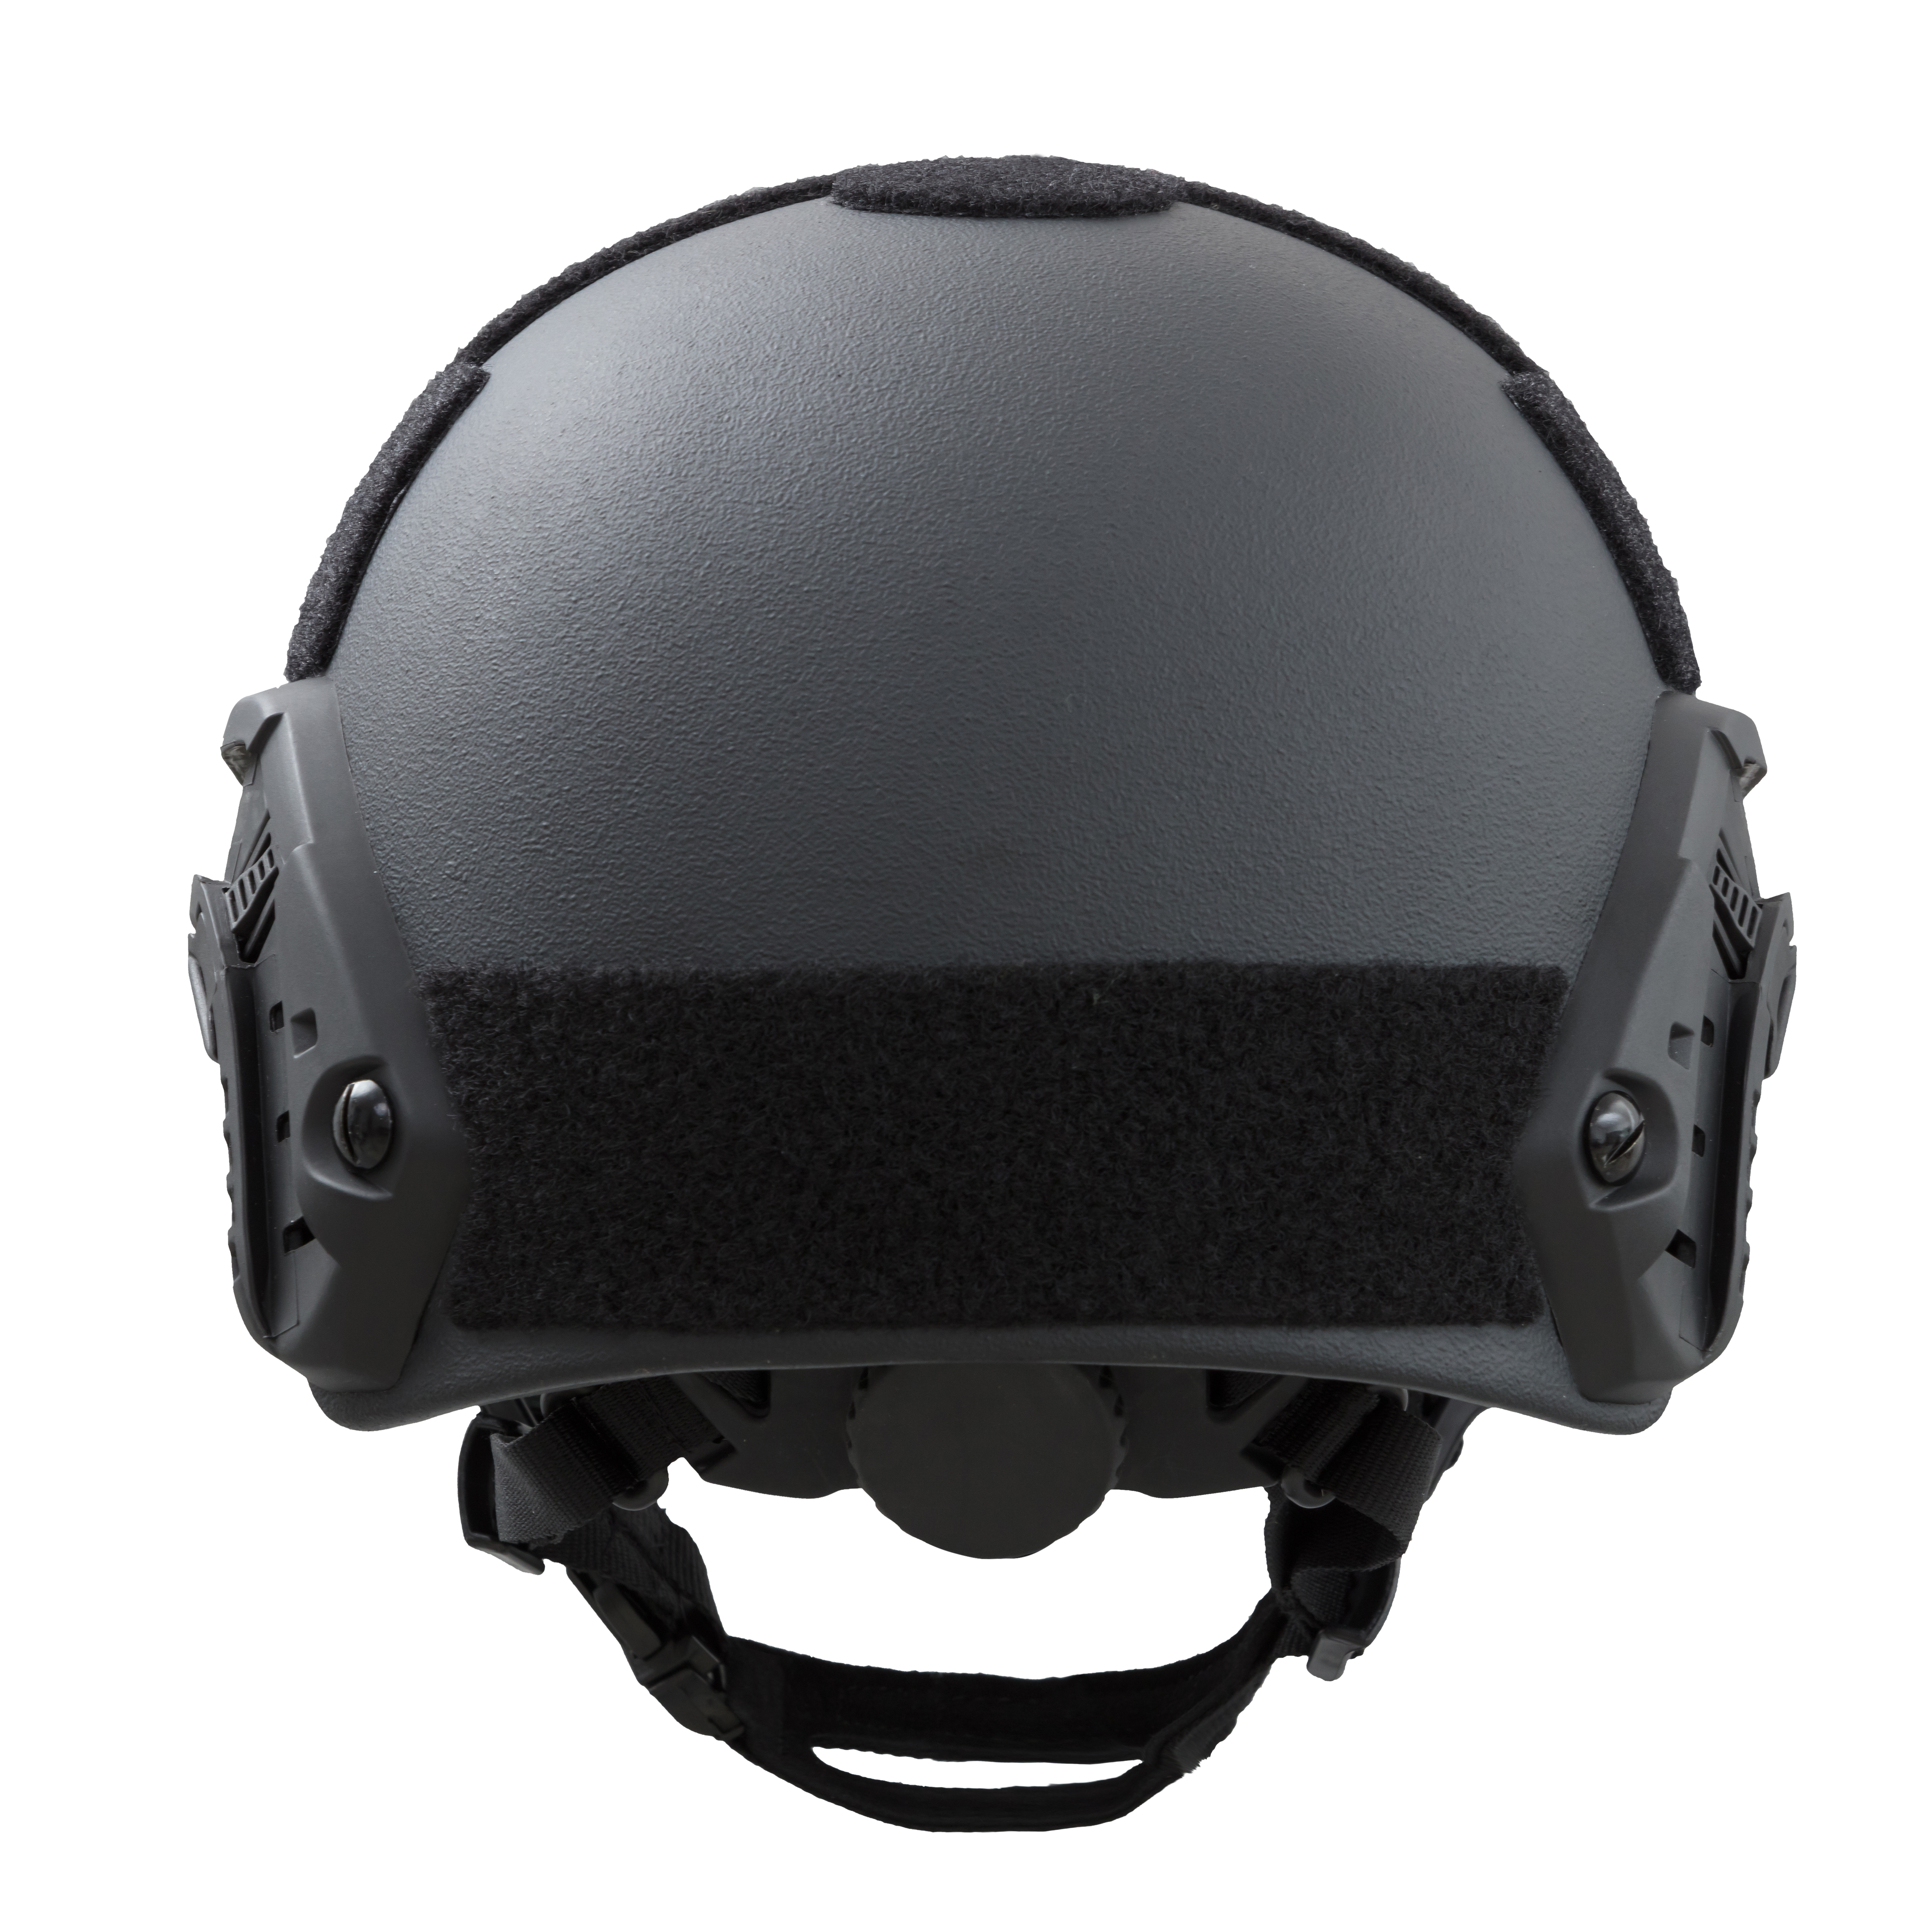 ARCH Bulletproof Helmet